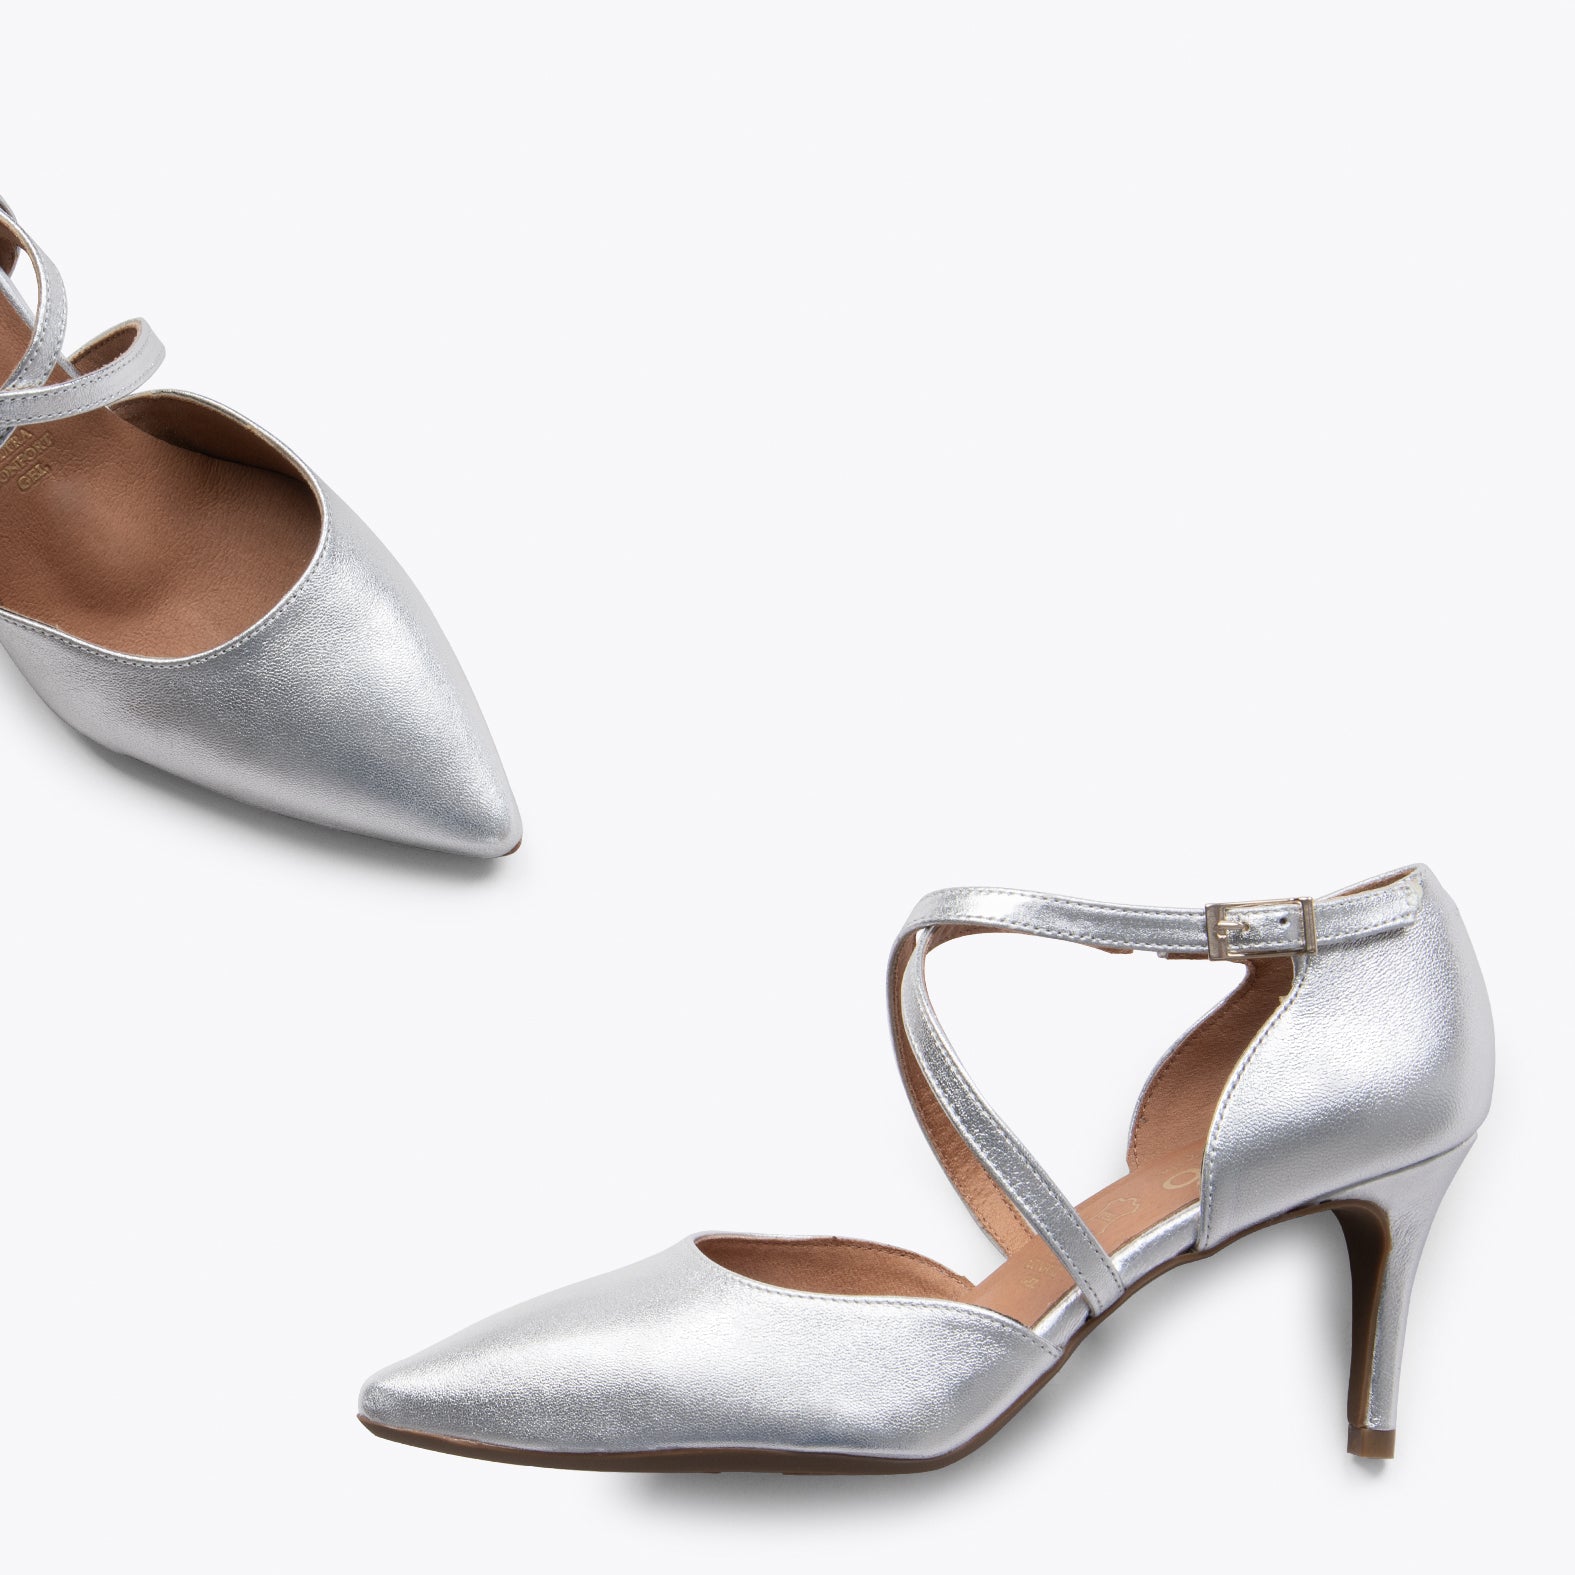 COCKTAIL - SILVER elegant high heel stilettos